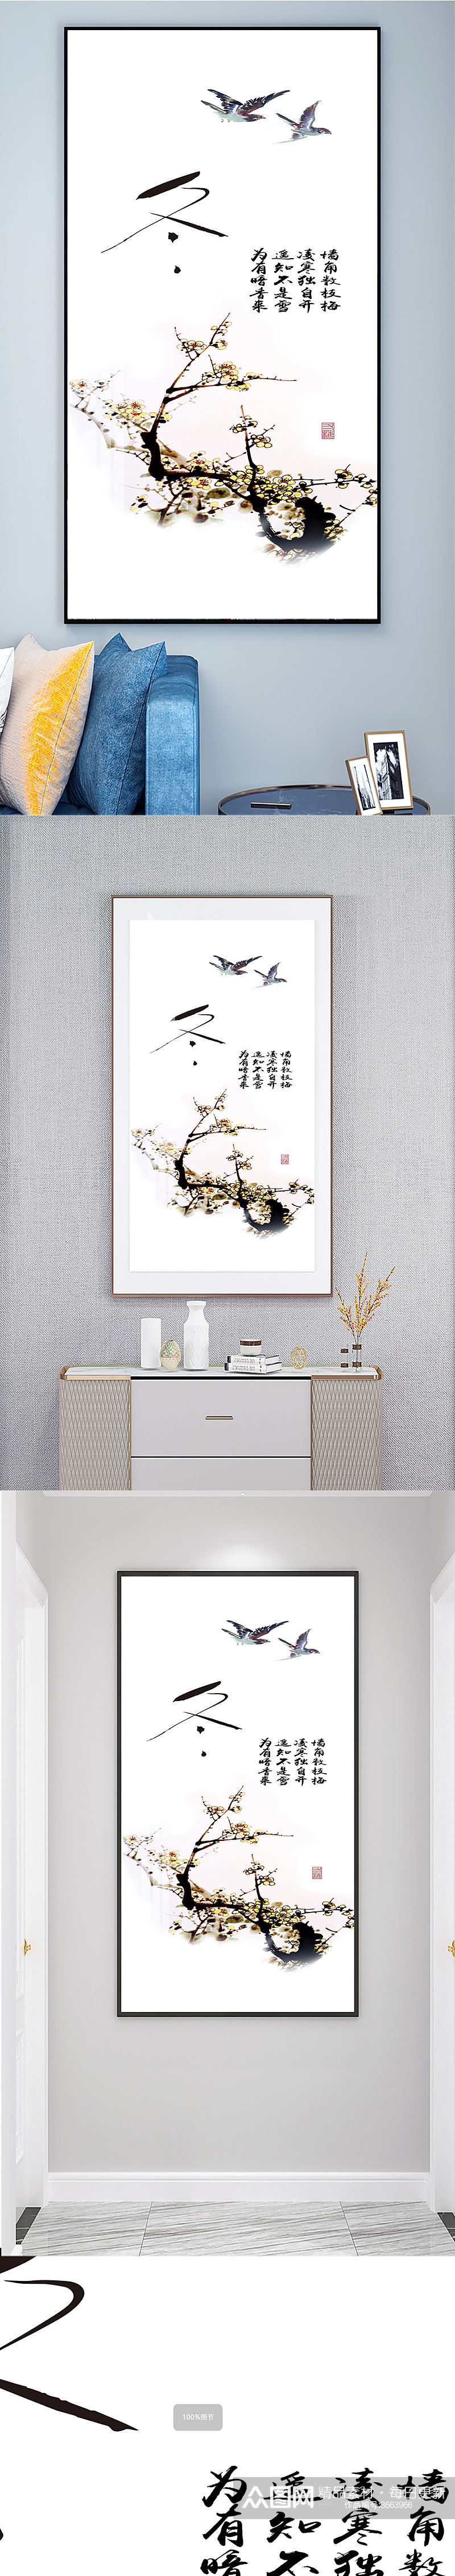 中式冬日梅花装饰画素材